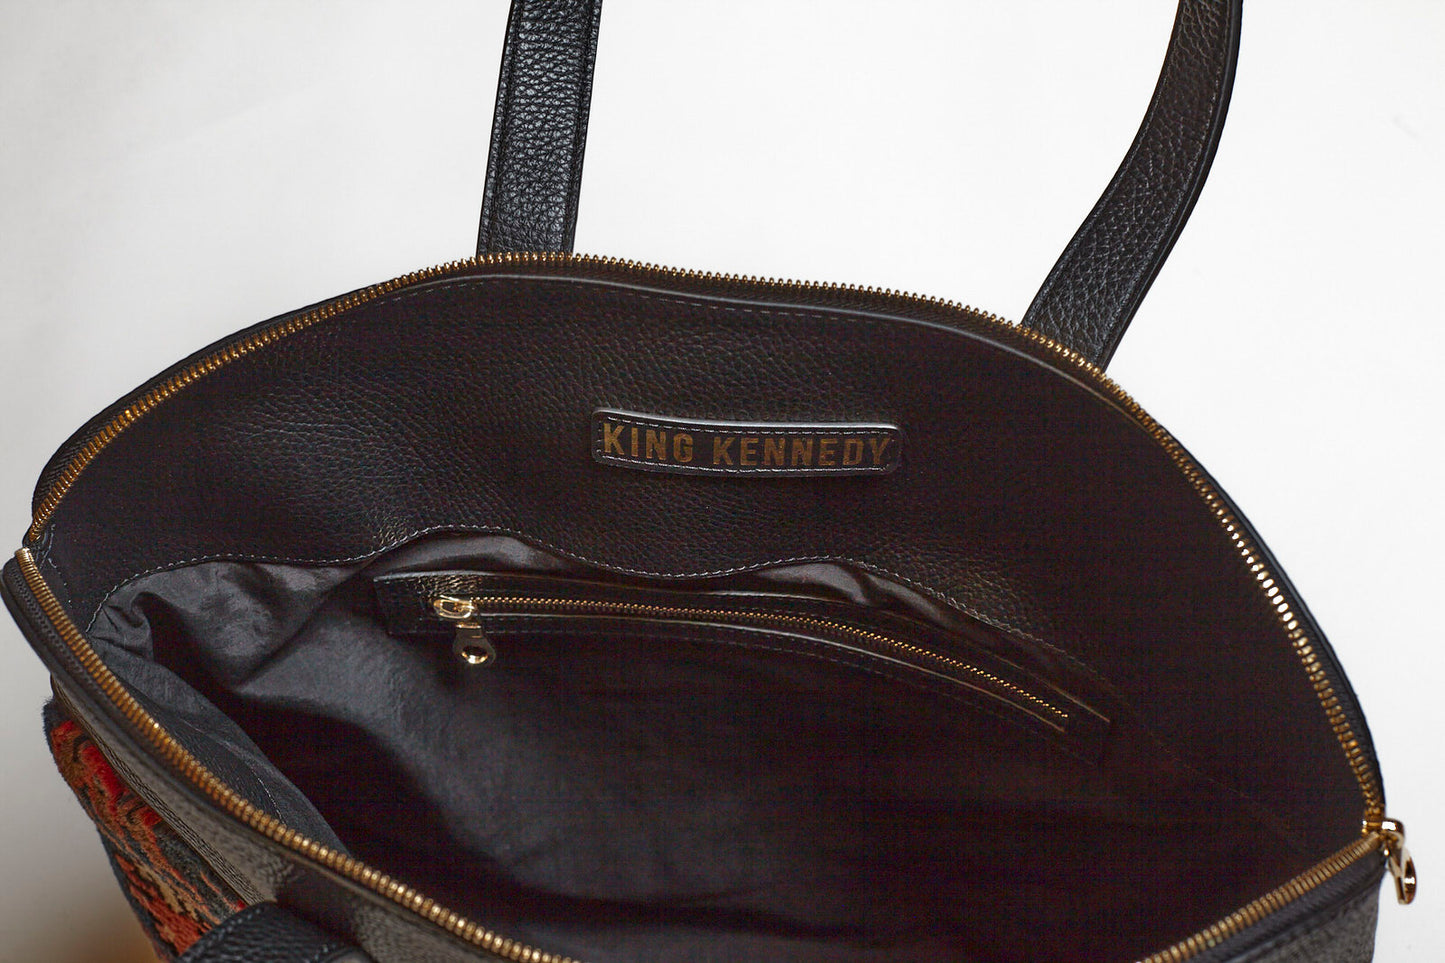 King Kennedy Despina Bag - 00010